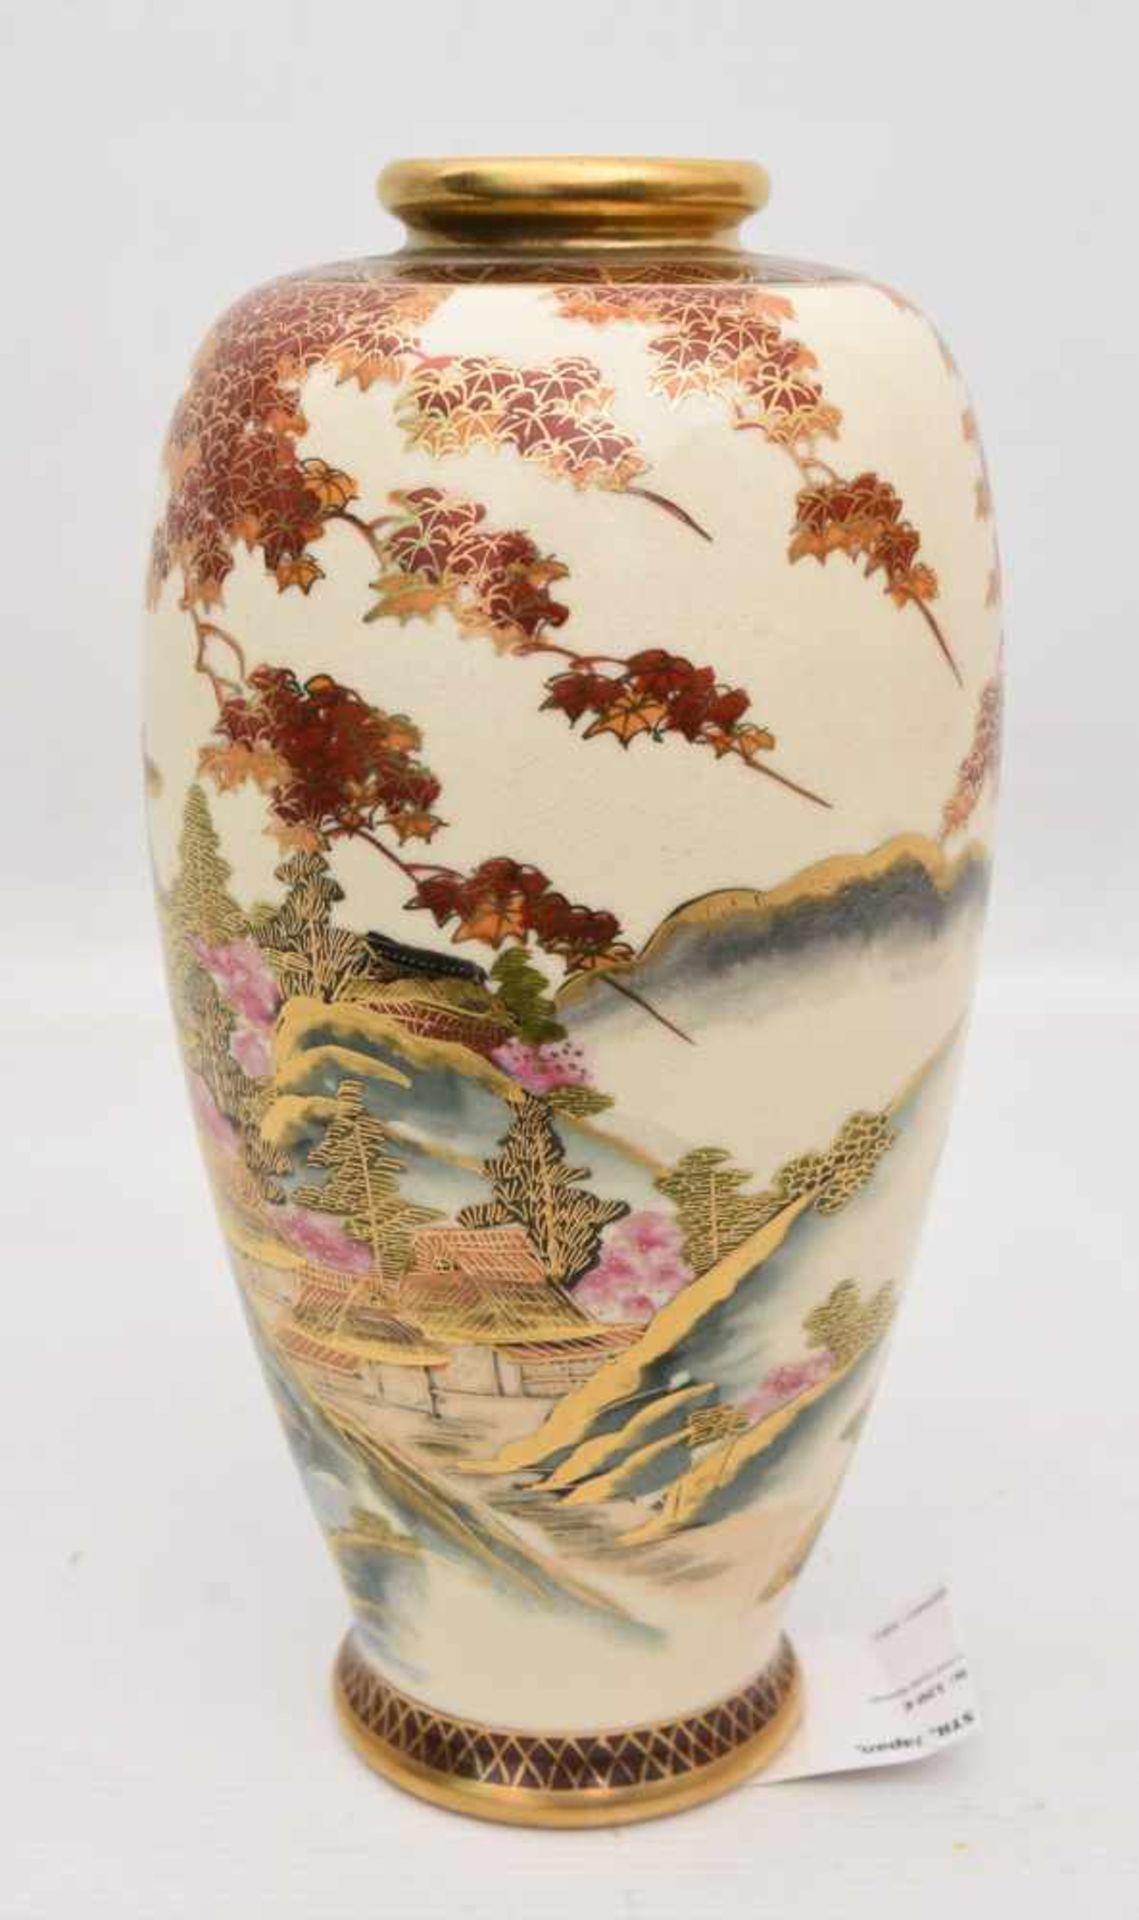 JAPANISCHE VASE IM SATSUMA STIL, Japan, wohl 19./20. JhSeht gut erhaltene Vase mit Landschaftsdekor. - Image 2 of 6